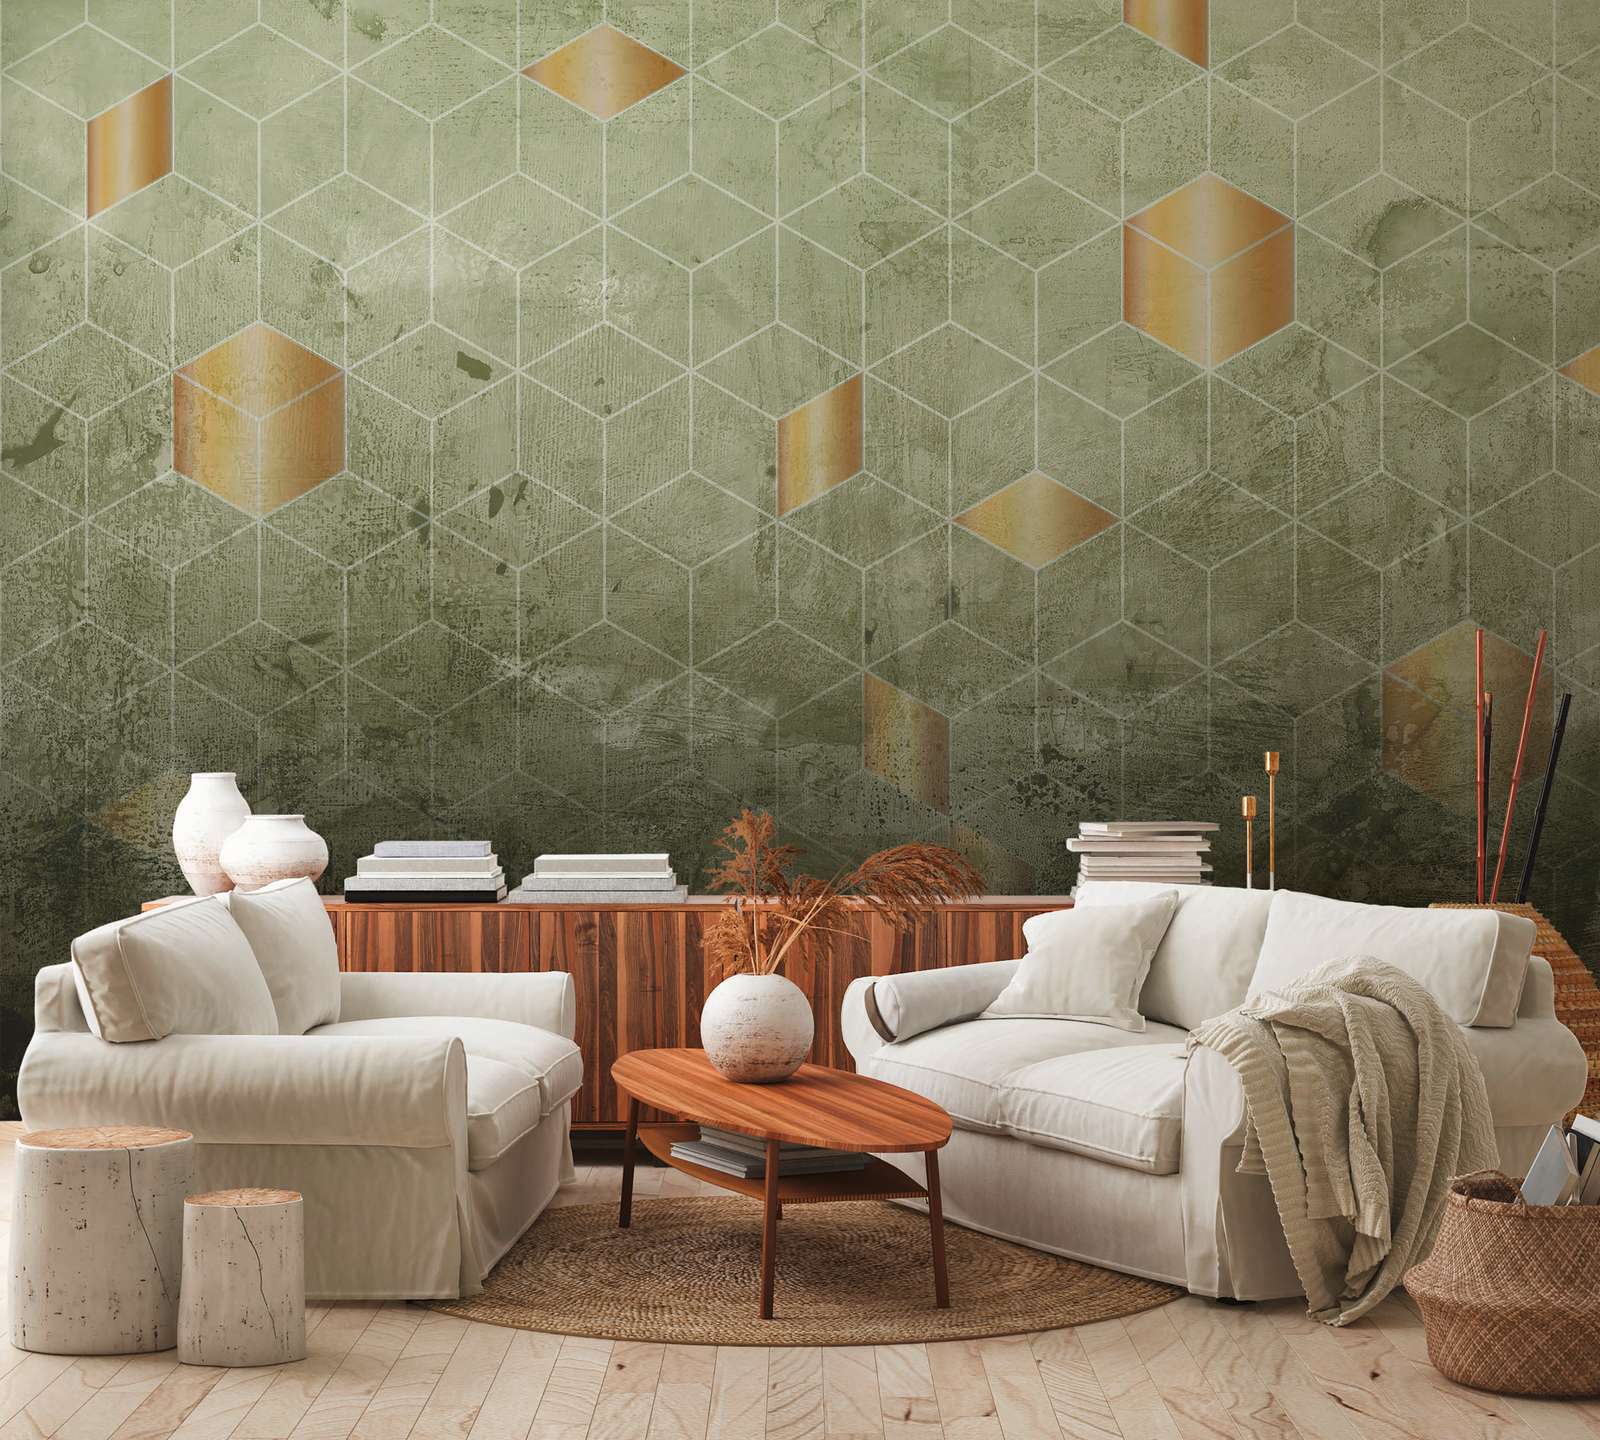             Digital behang vierkant patroon met 3D effect - groen, goud
        